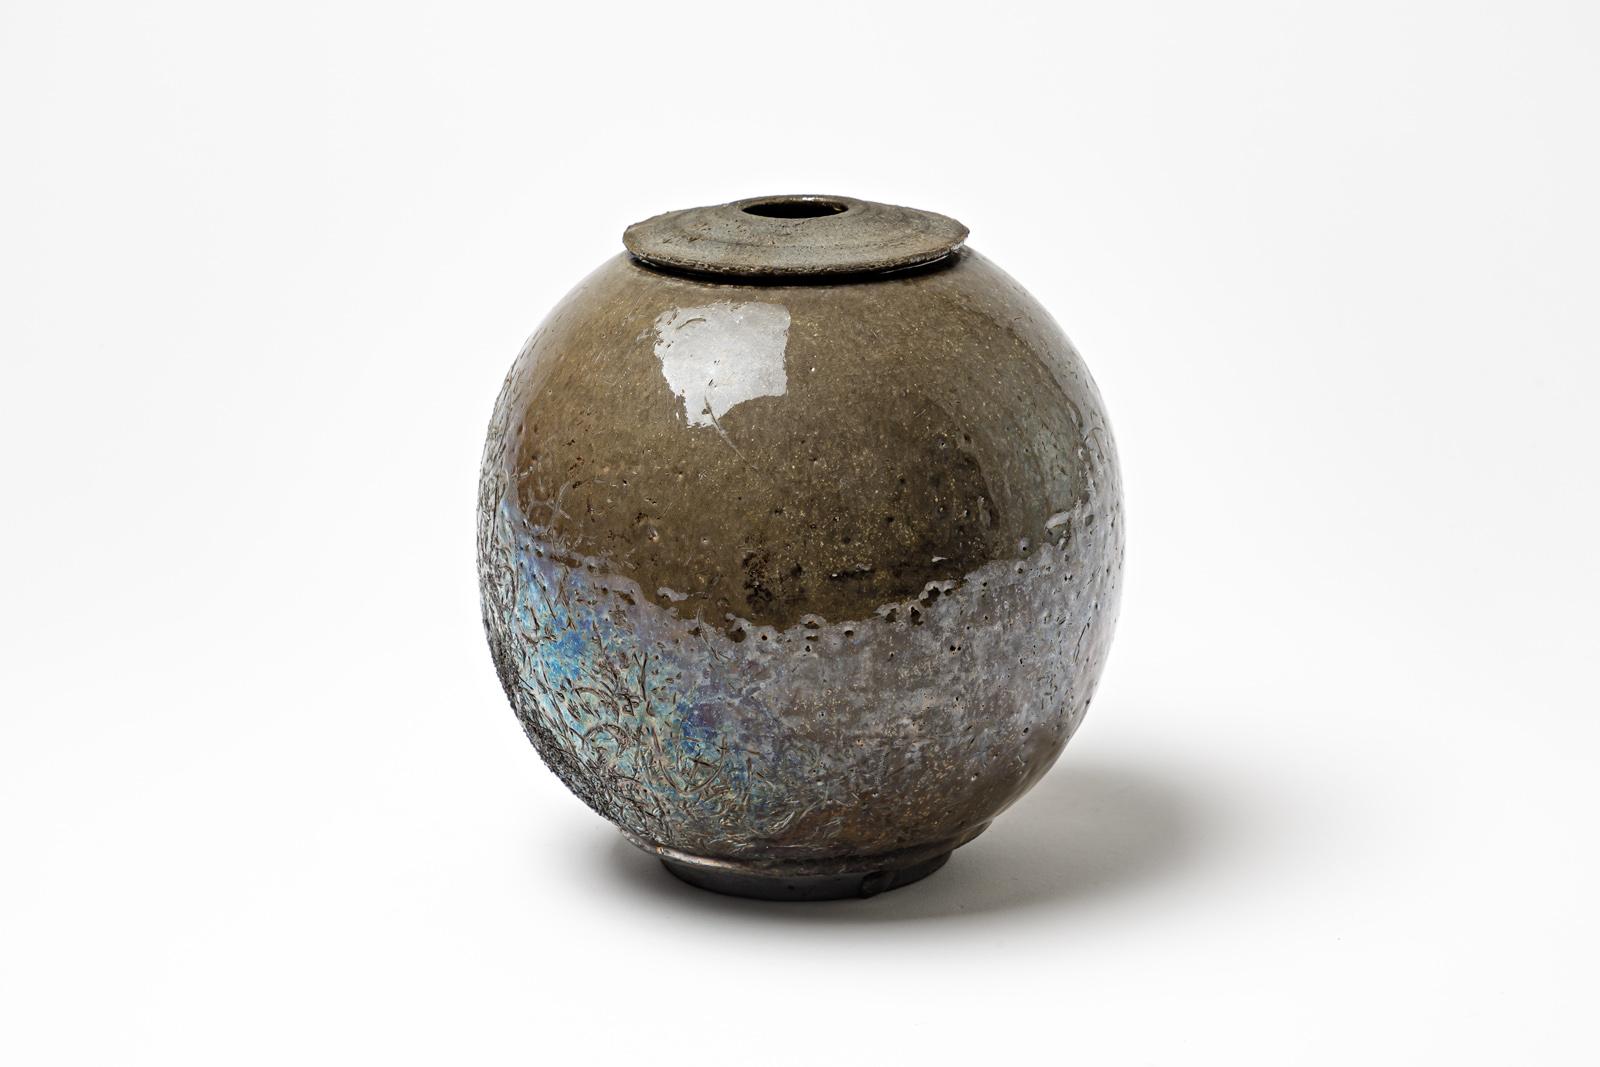 Vase en grès émaillé brun à reflets métalliques de Gisèle Buthod-Garçon. Raku a tiré. Monogramme de l'artiste sous la base. Vers 1980-1990.
H : 7.5' x 6.7' pouces.